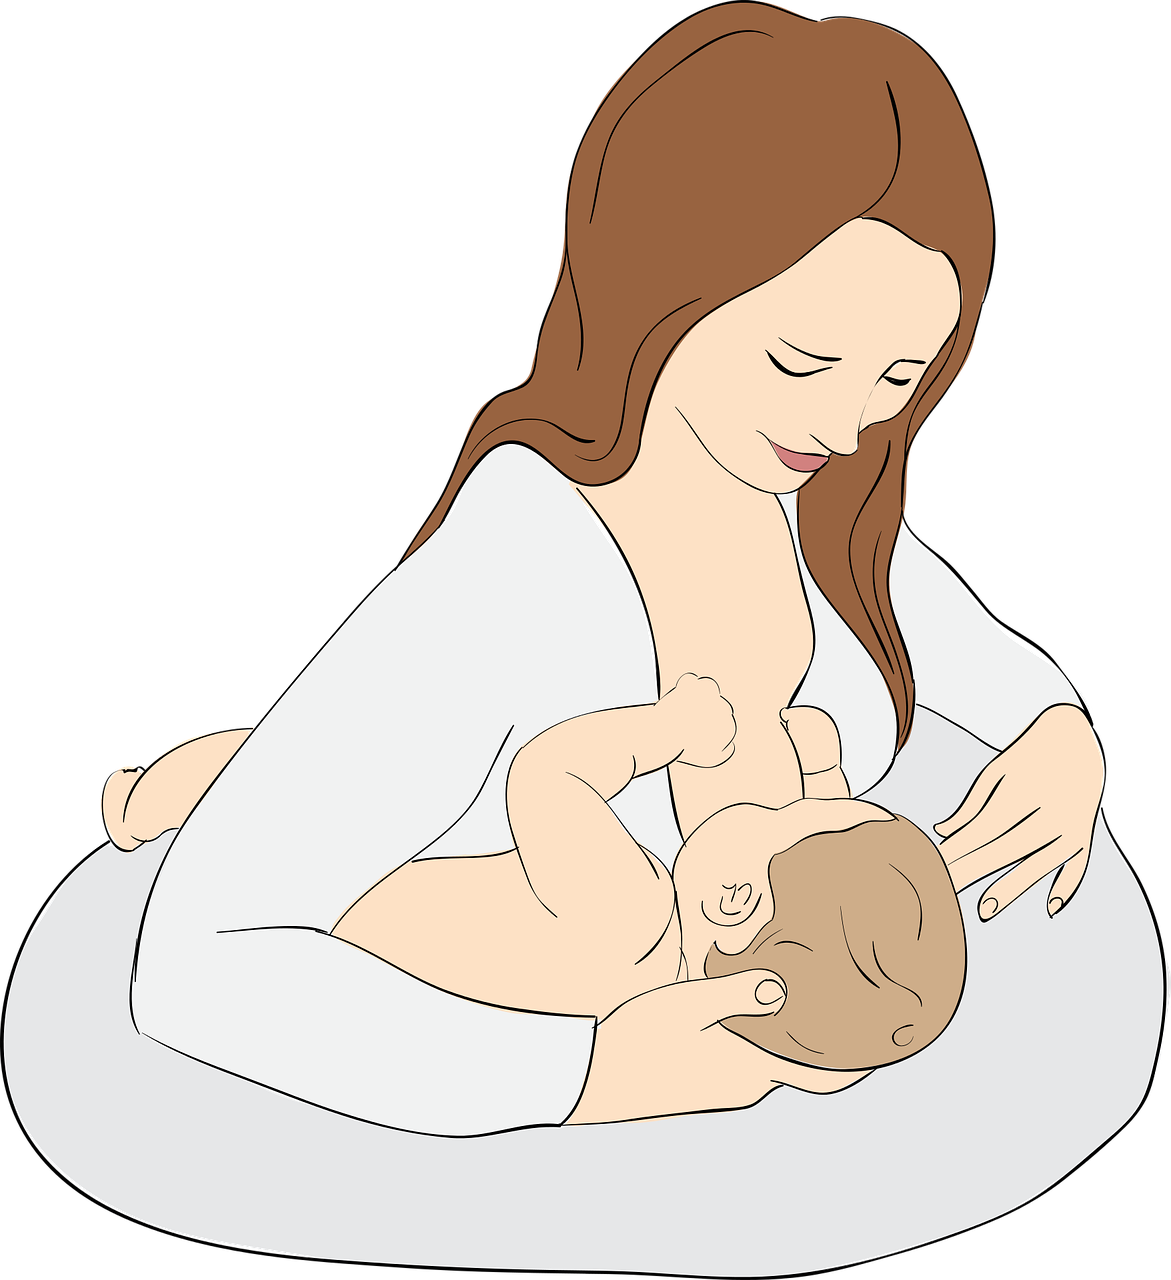 Žindyti Kūdikį, Motinystė, Motina, Krūtinė, Pienas, Vaikas, Gimimas, Meilė, Mažas Vaikas, Mažas Dalykas